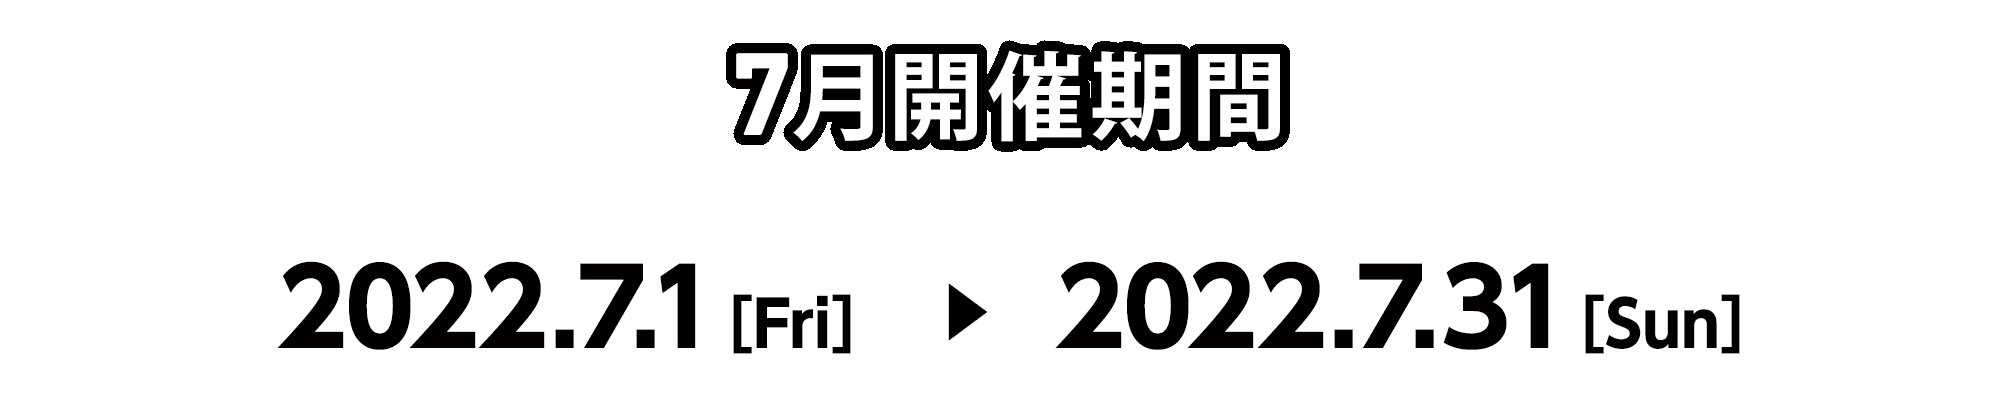 7月開催期間 2022.7.1[Fri] 〜 2022.7.31[Sun]